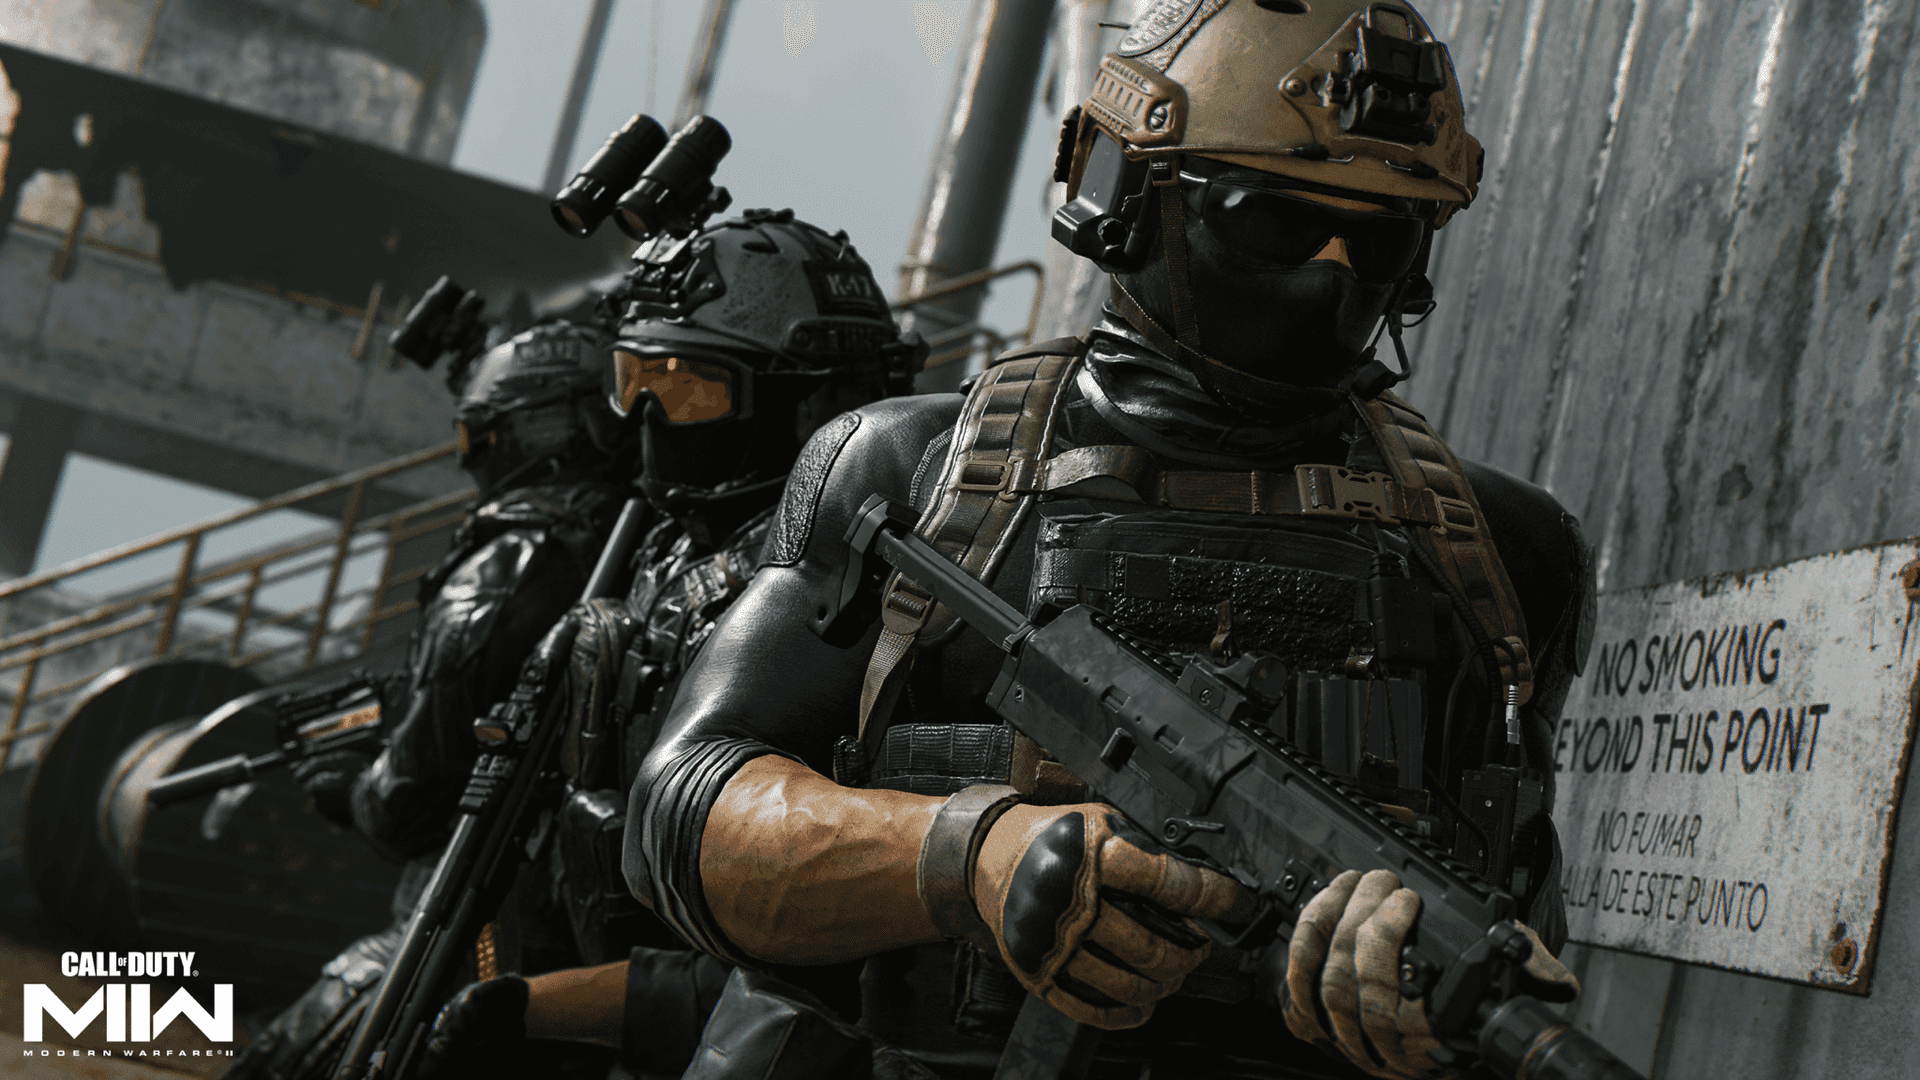 Preparatiper Un'esperienza Di Gioco Piena D'azione Con Call Of Duty